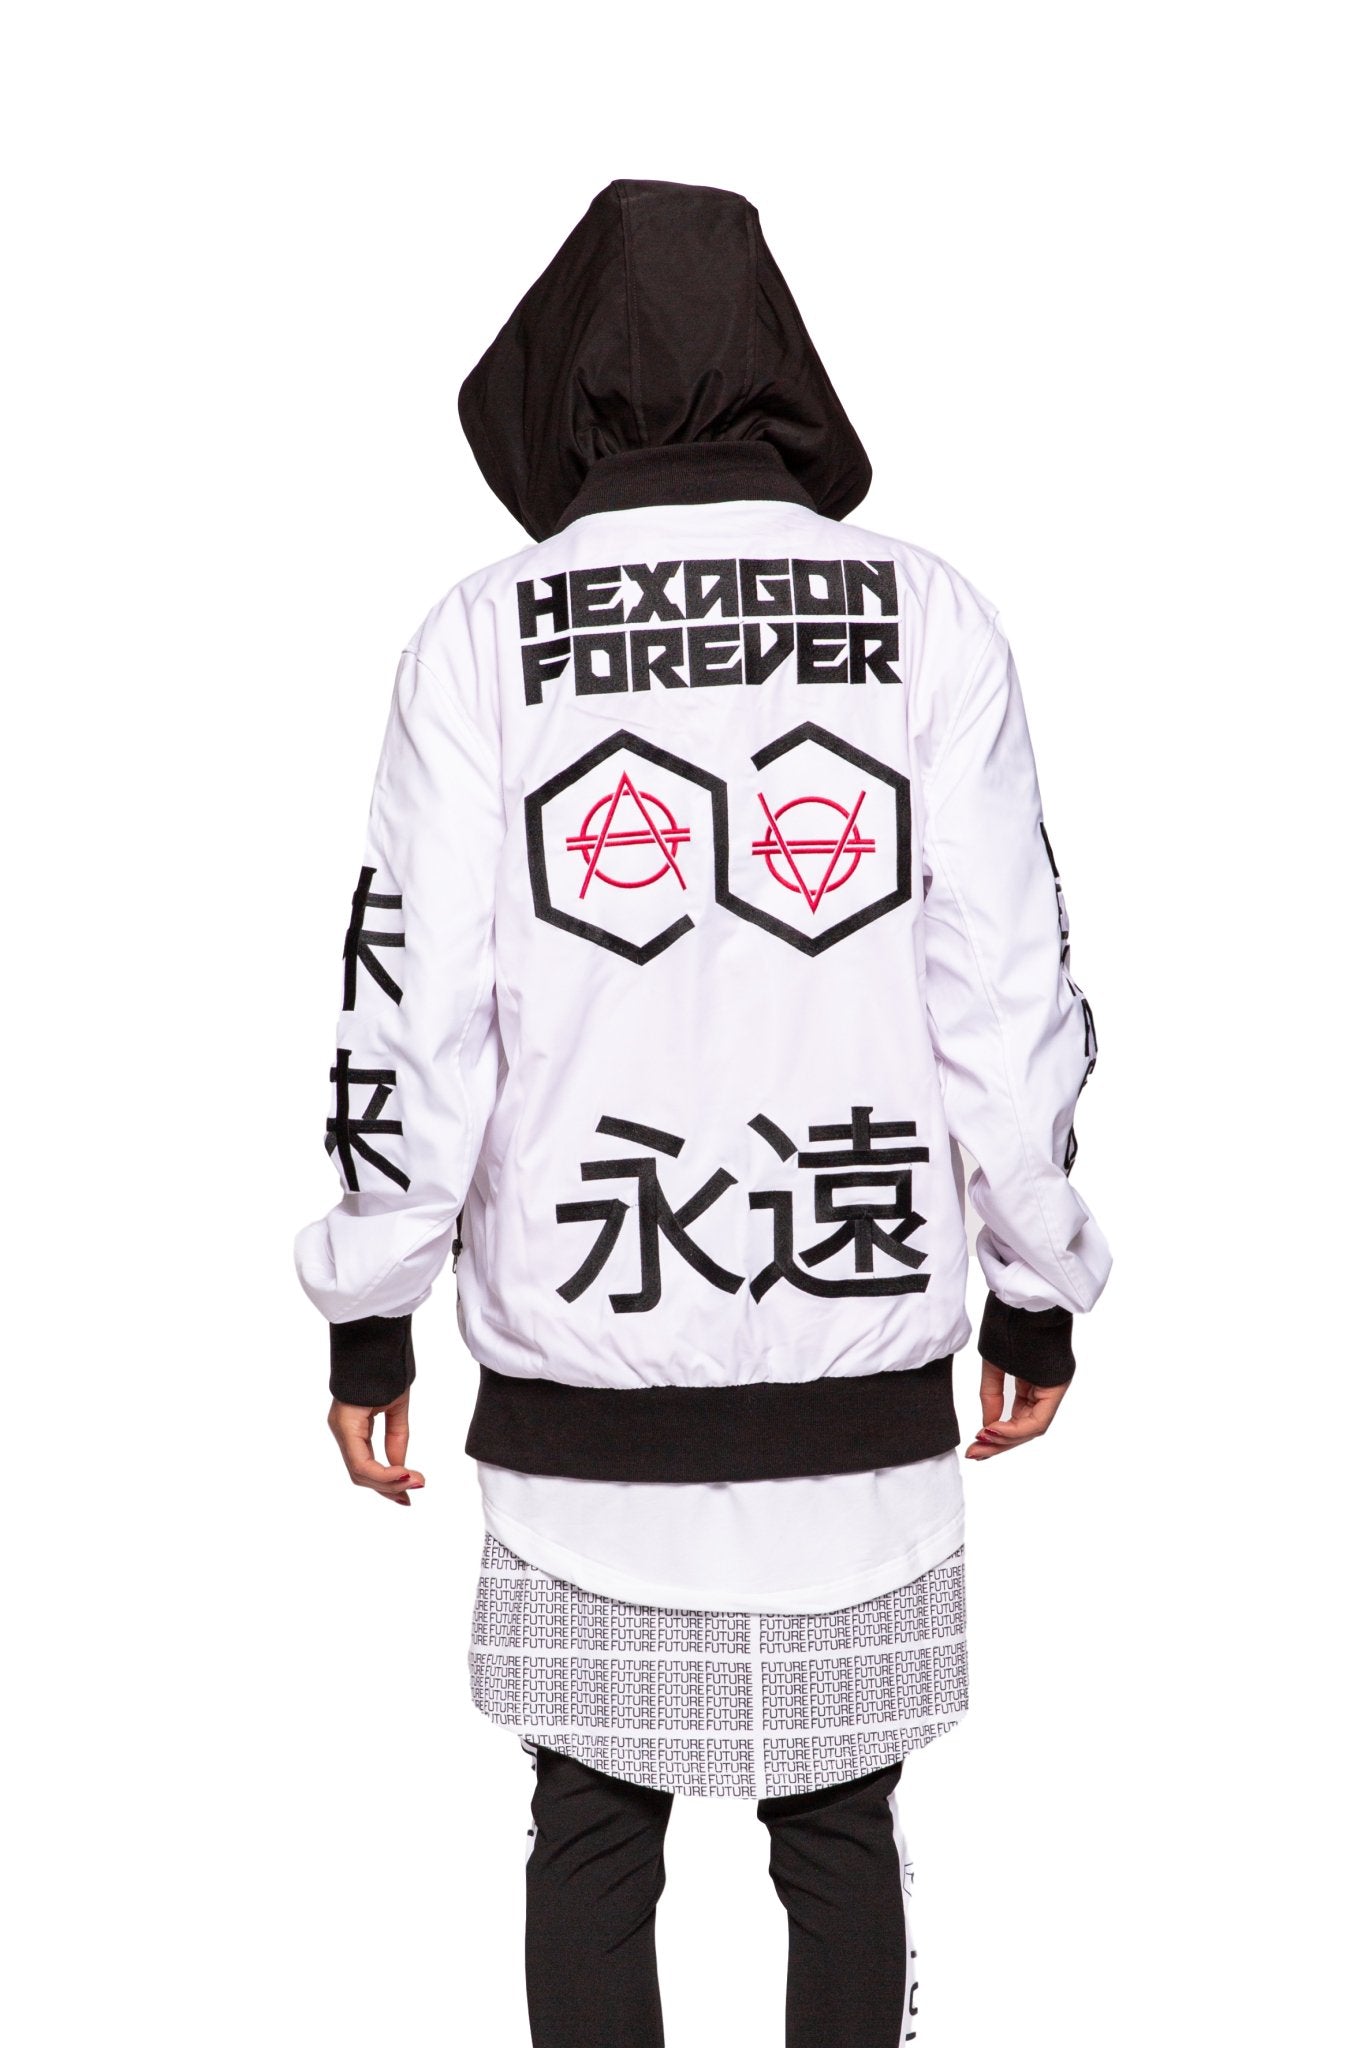 Hexagon Forever Hooded Bomber - HEXAGON - Don Diablo - Hexagon